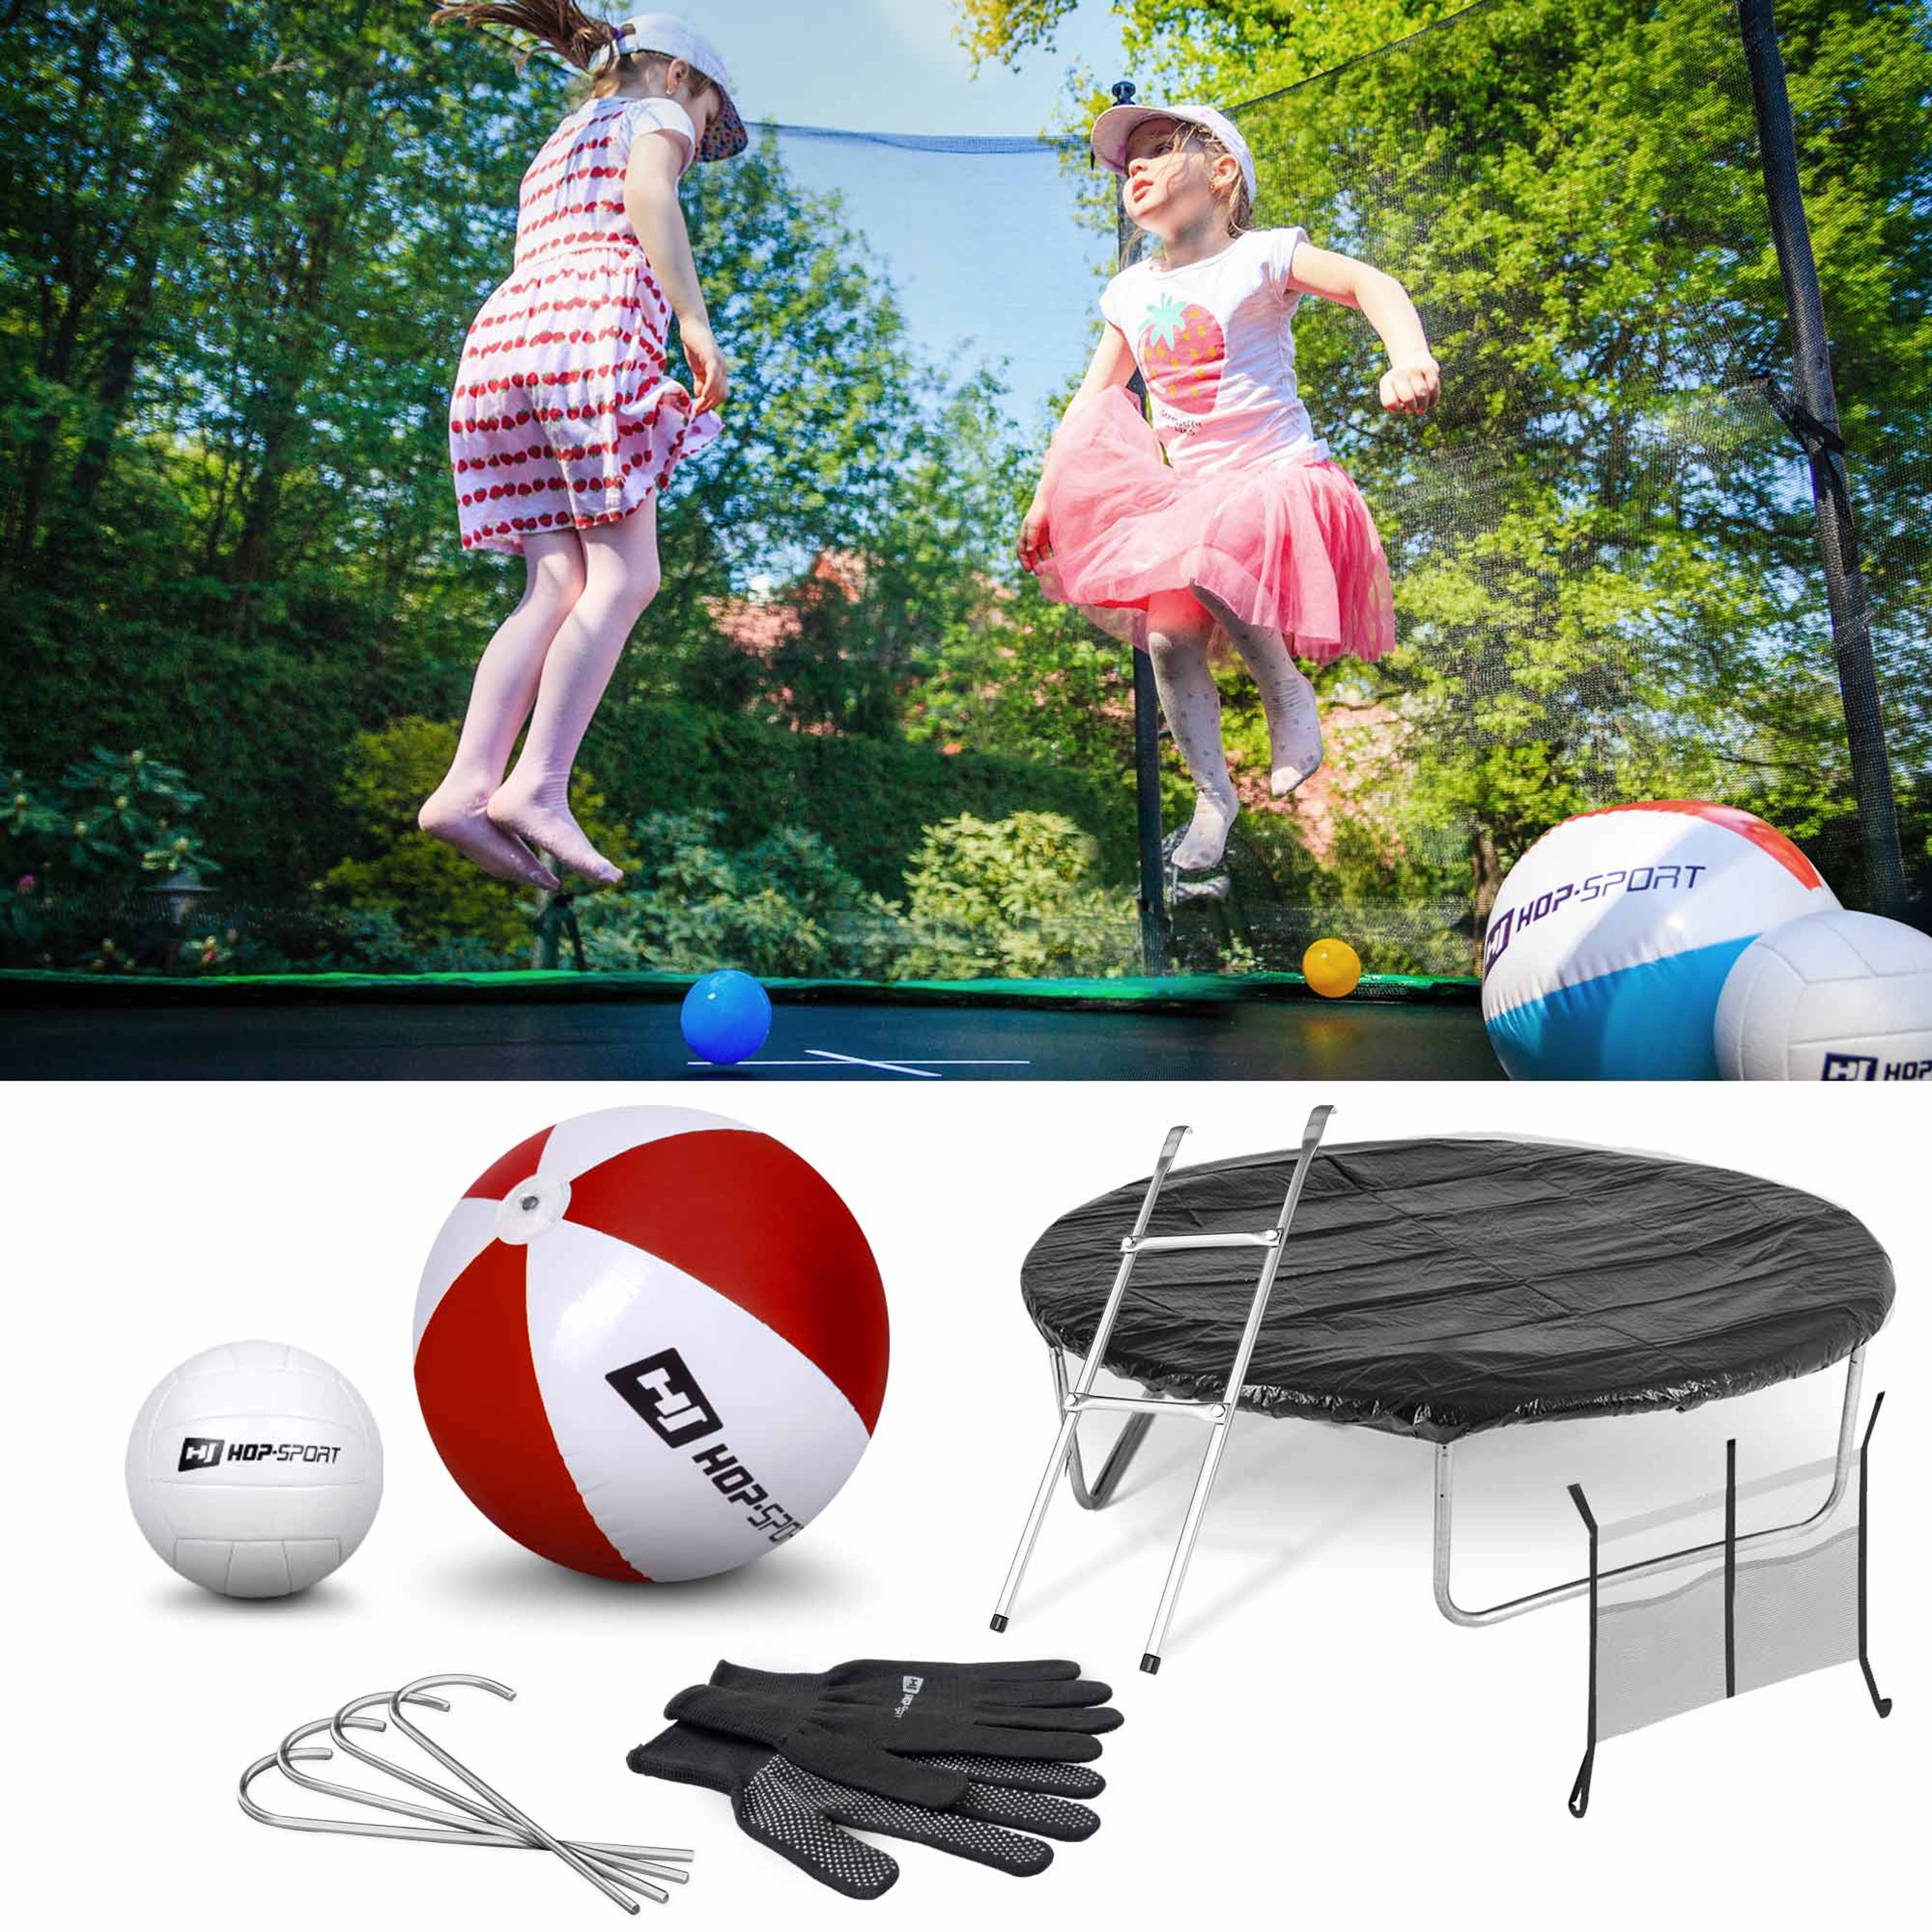 Inklusive: Leiter, Regenplane, Bodenhaken, Strandball und einen VolleyballInklusive: Leiter, Regenplane, Bodenhaken, Strandball und einen Volleyball